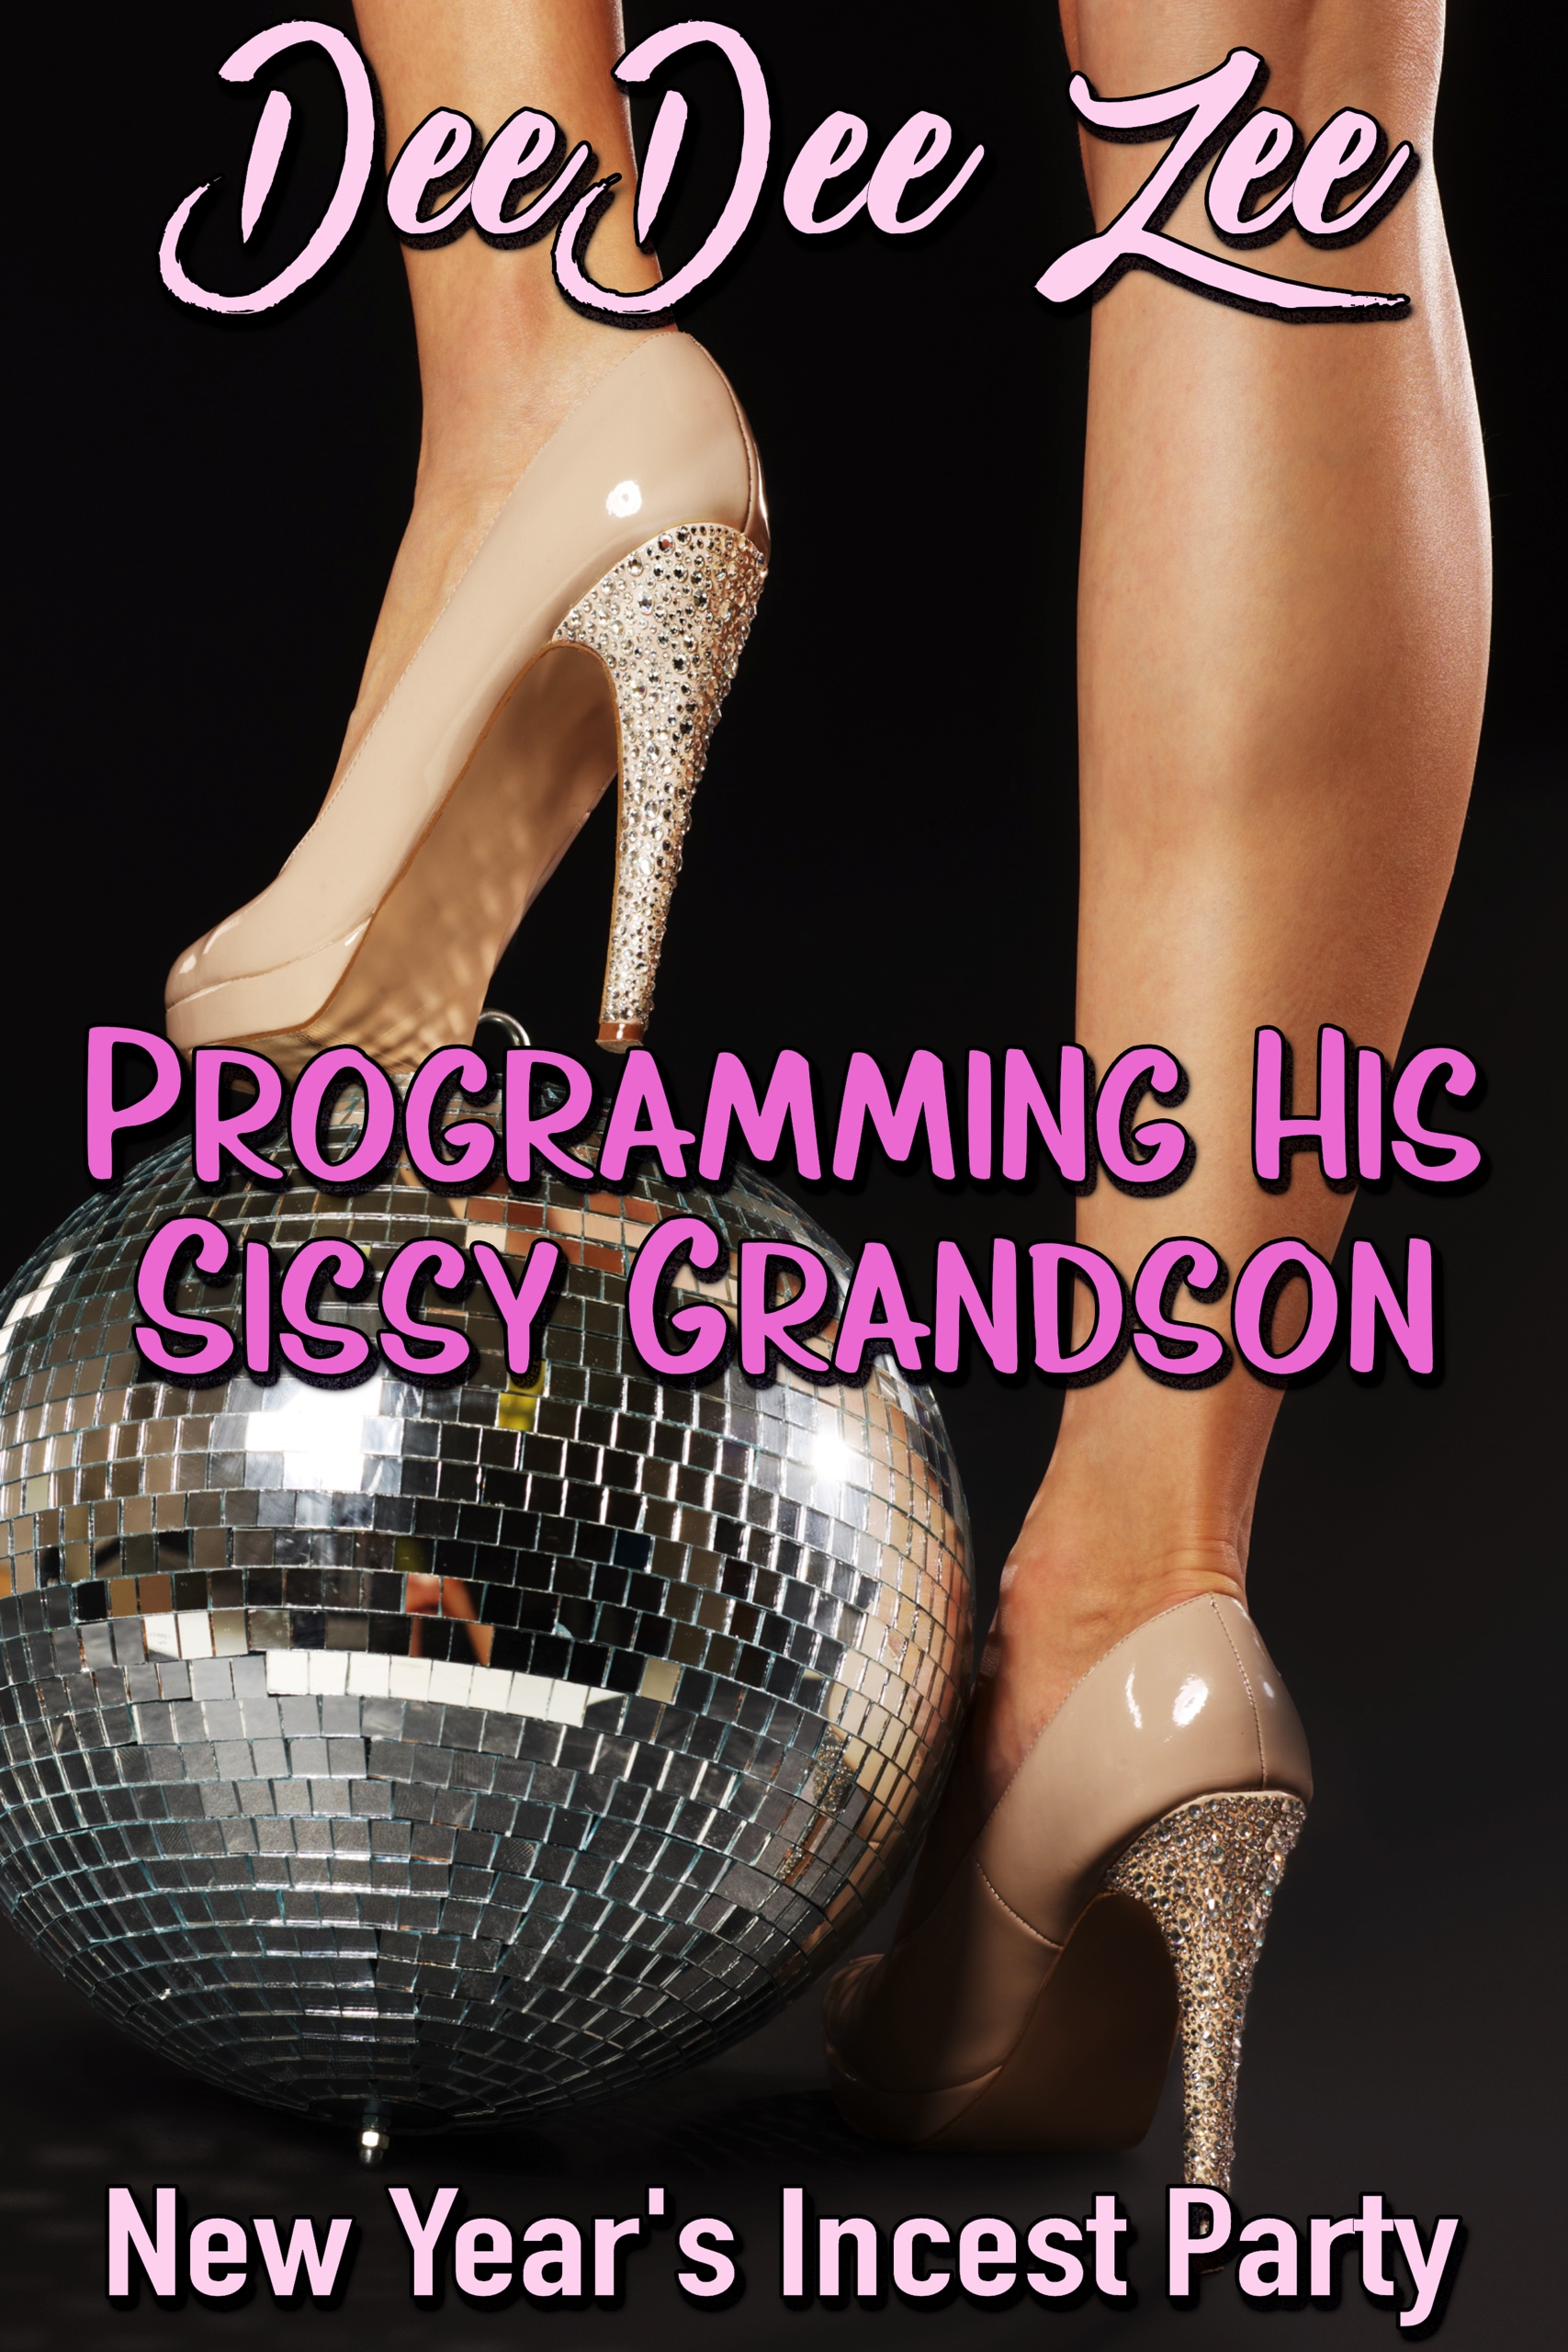 Programming His Sissy Grandson, an Ebook by DeeDee Zee